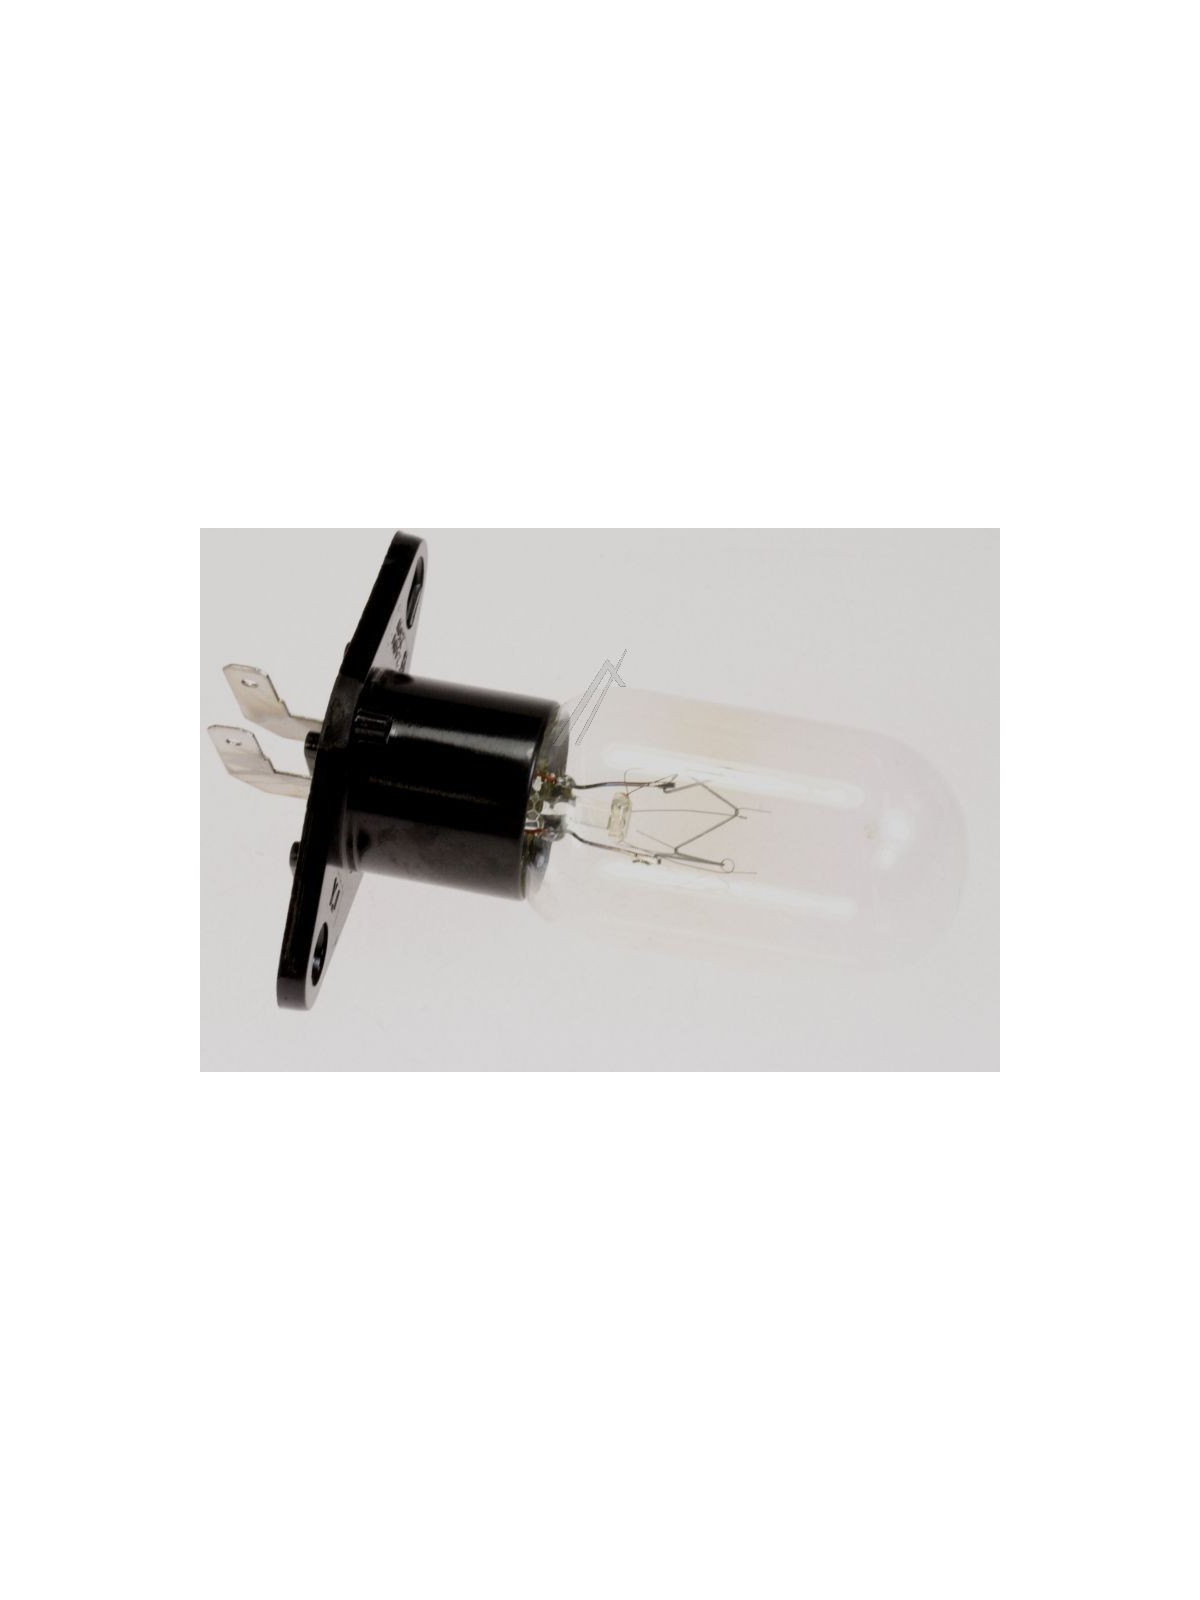 Lampe Sharp R24ST / R634 / R842 - Micro-ondes